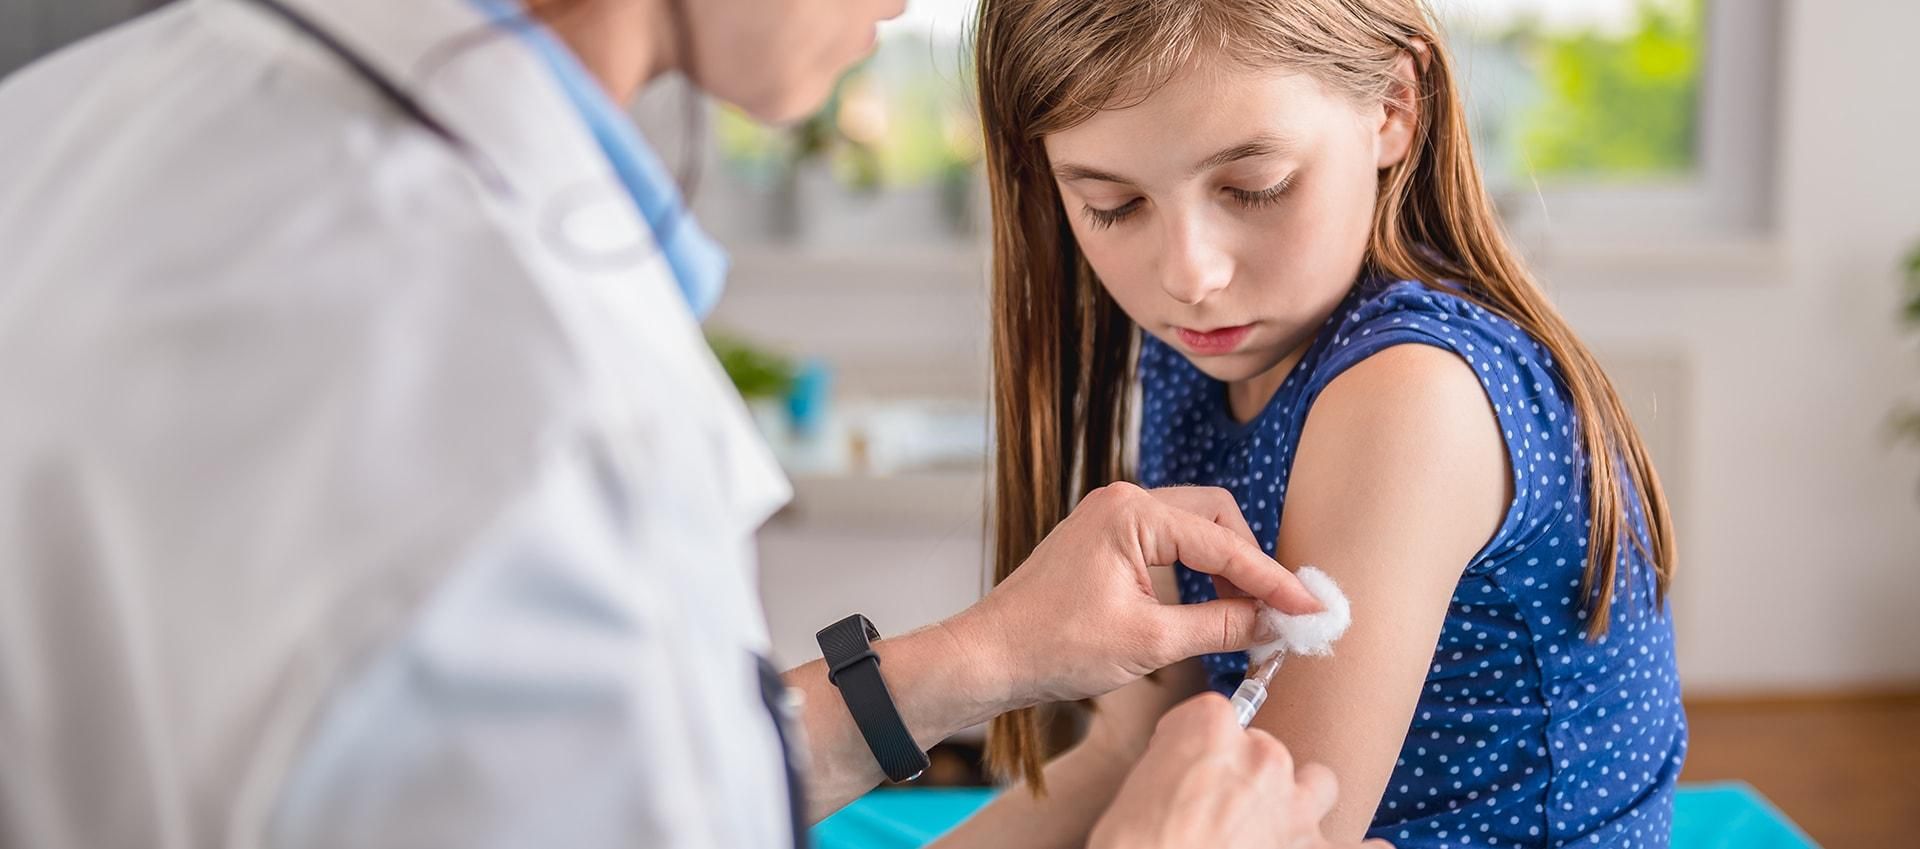 В США разрешат вакцинировать подростков препаратом Pfizer